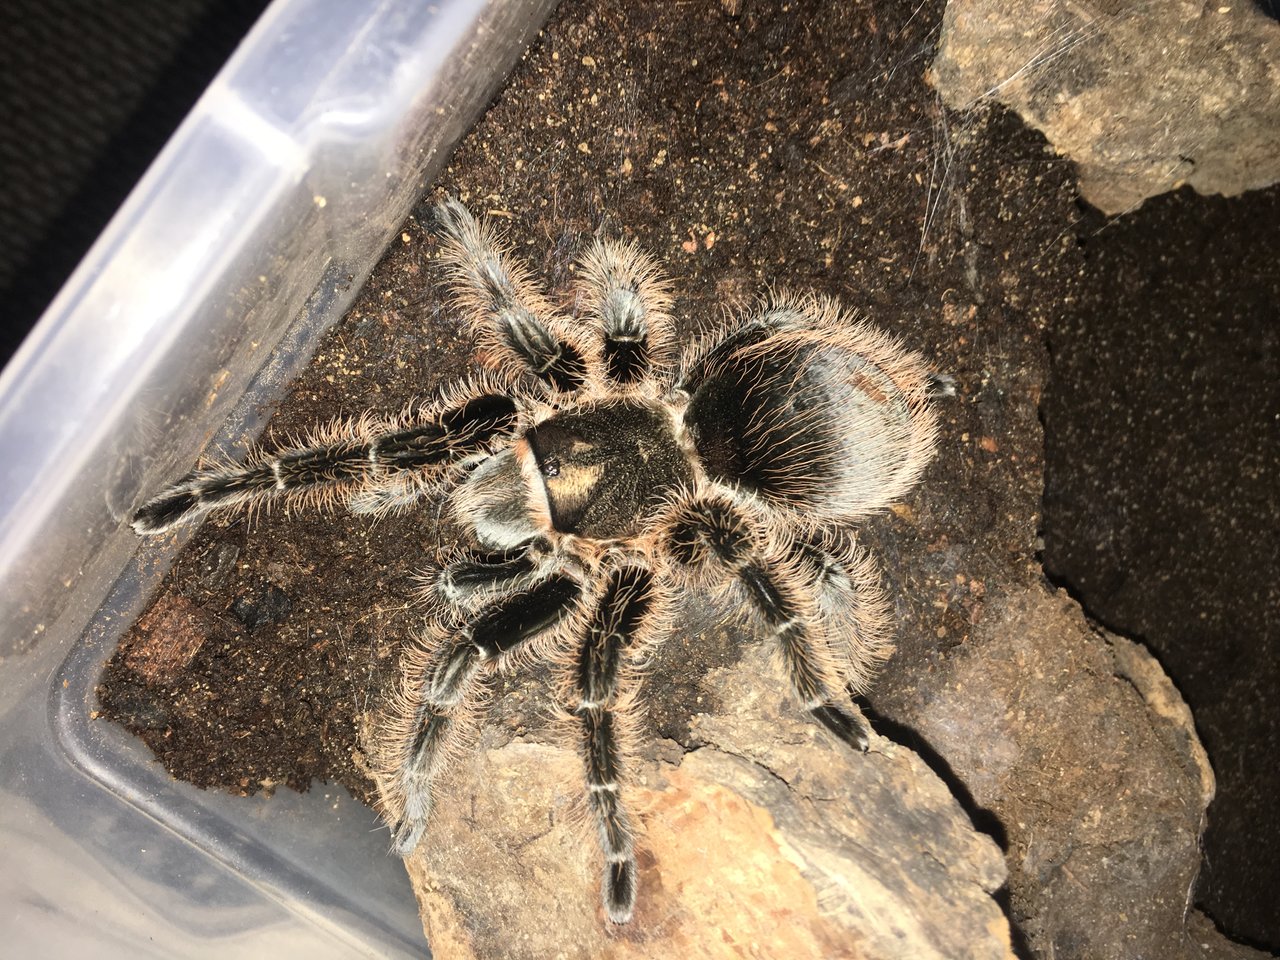 My lovely tarantula